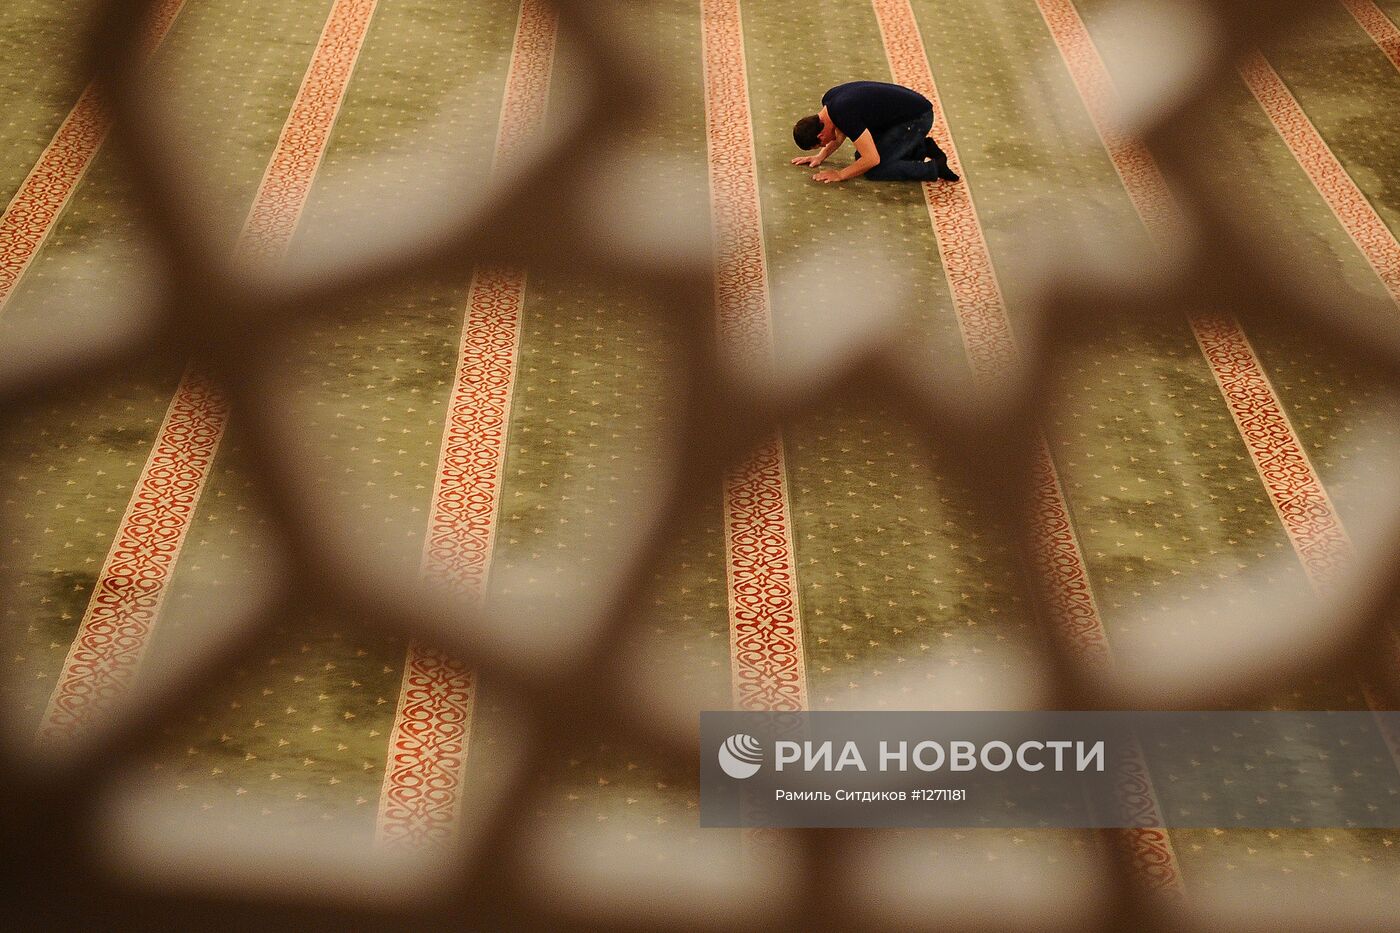 Центральная мечеть имени Ахмада Кадырова в Грозном